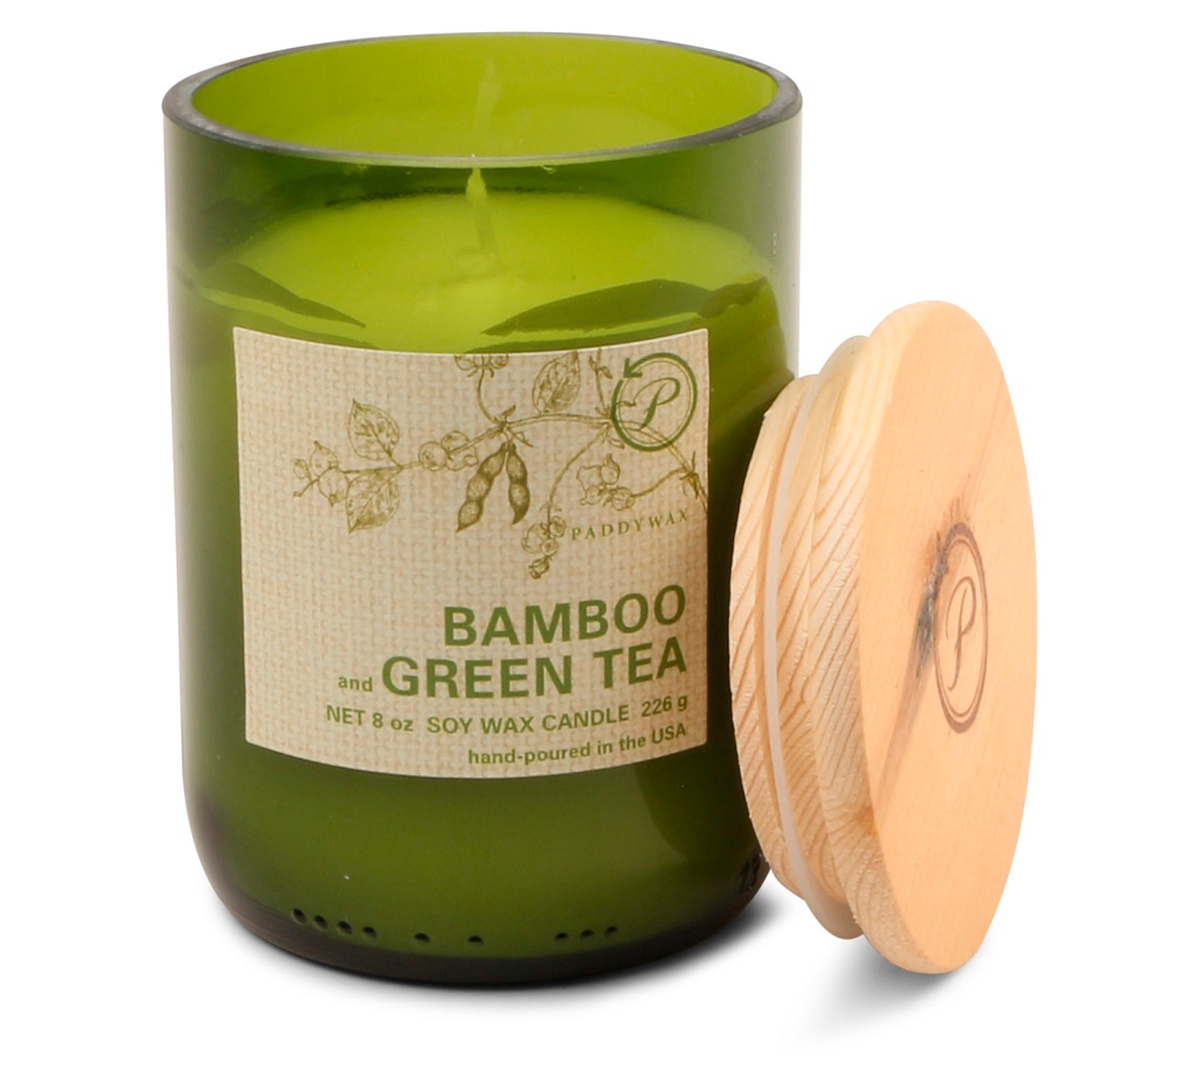 Bamboo & Green Tea Candle, 8 oz. - Green